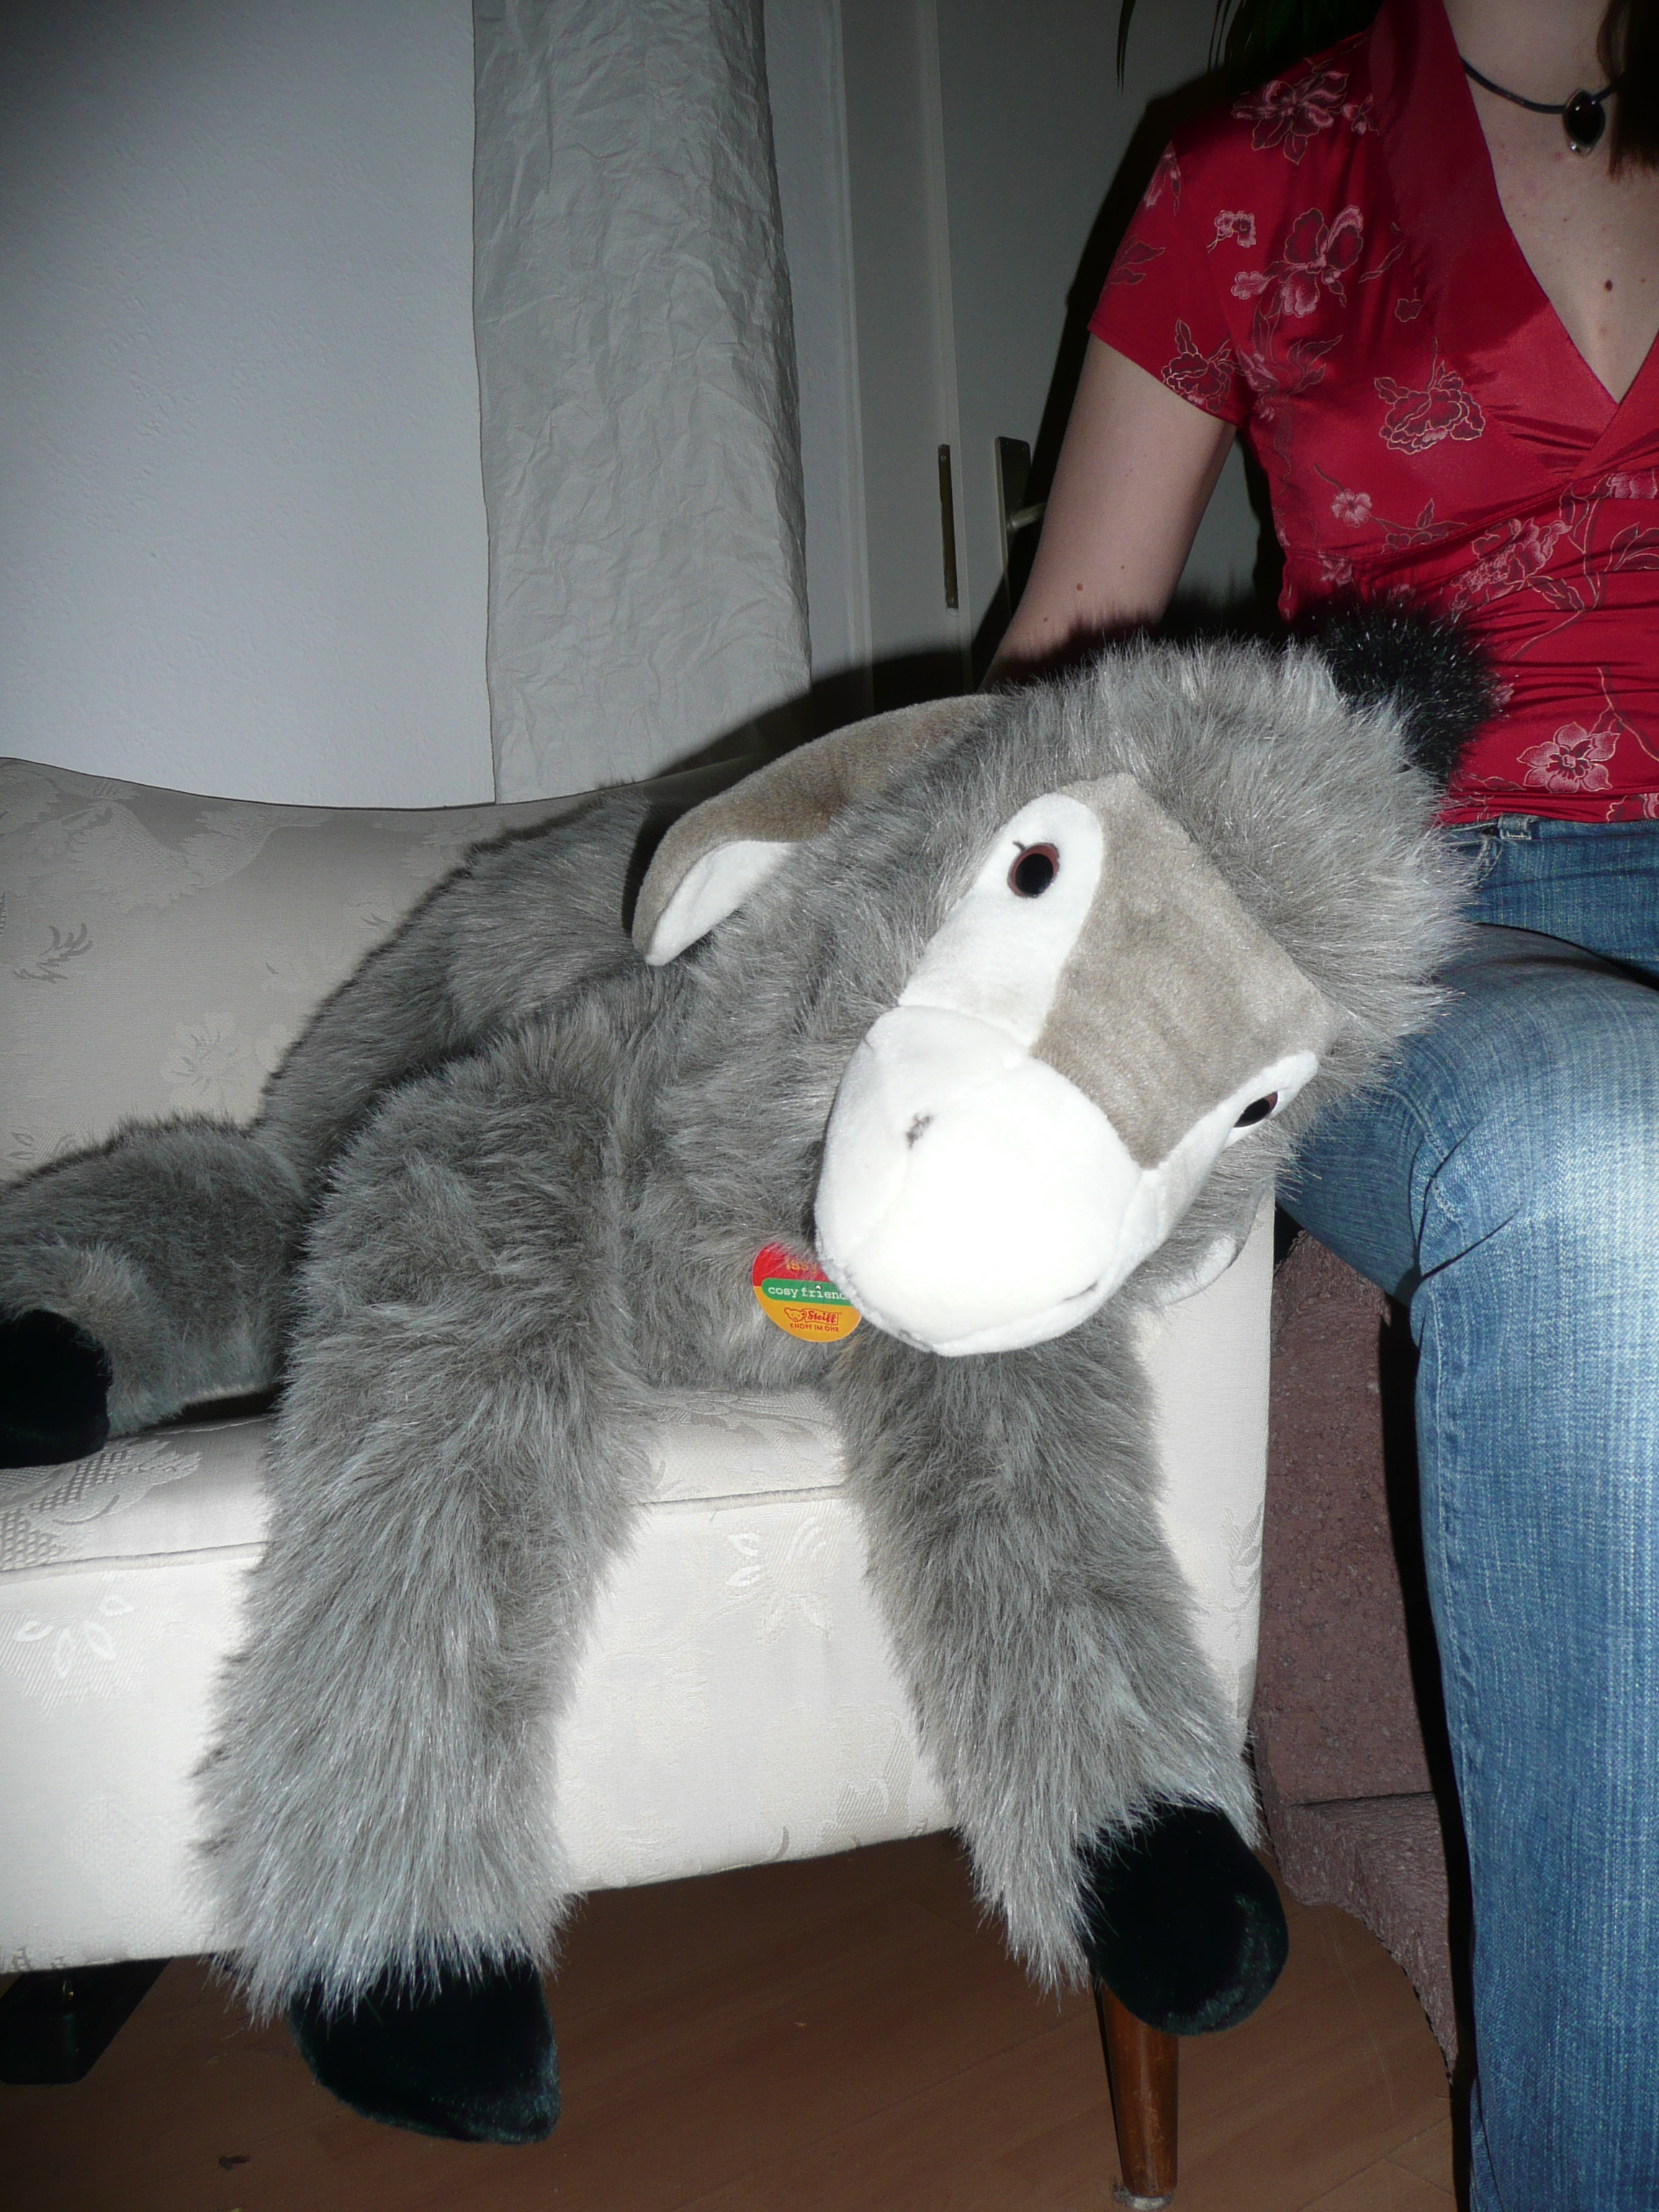 Cute Donkey?